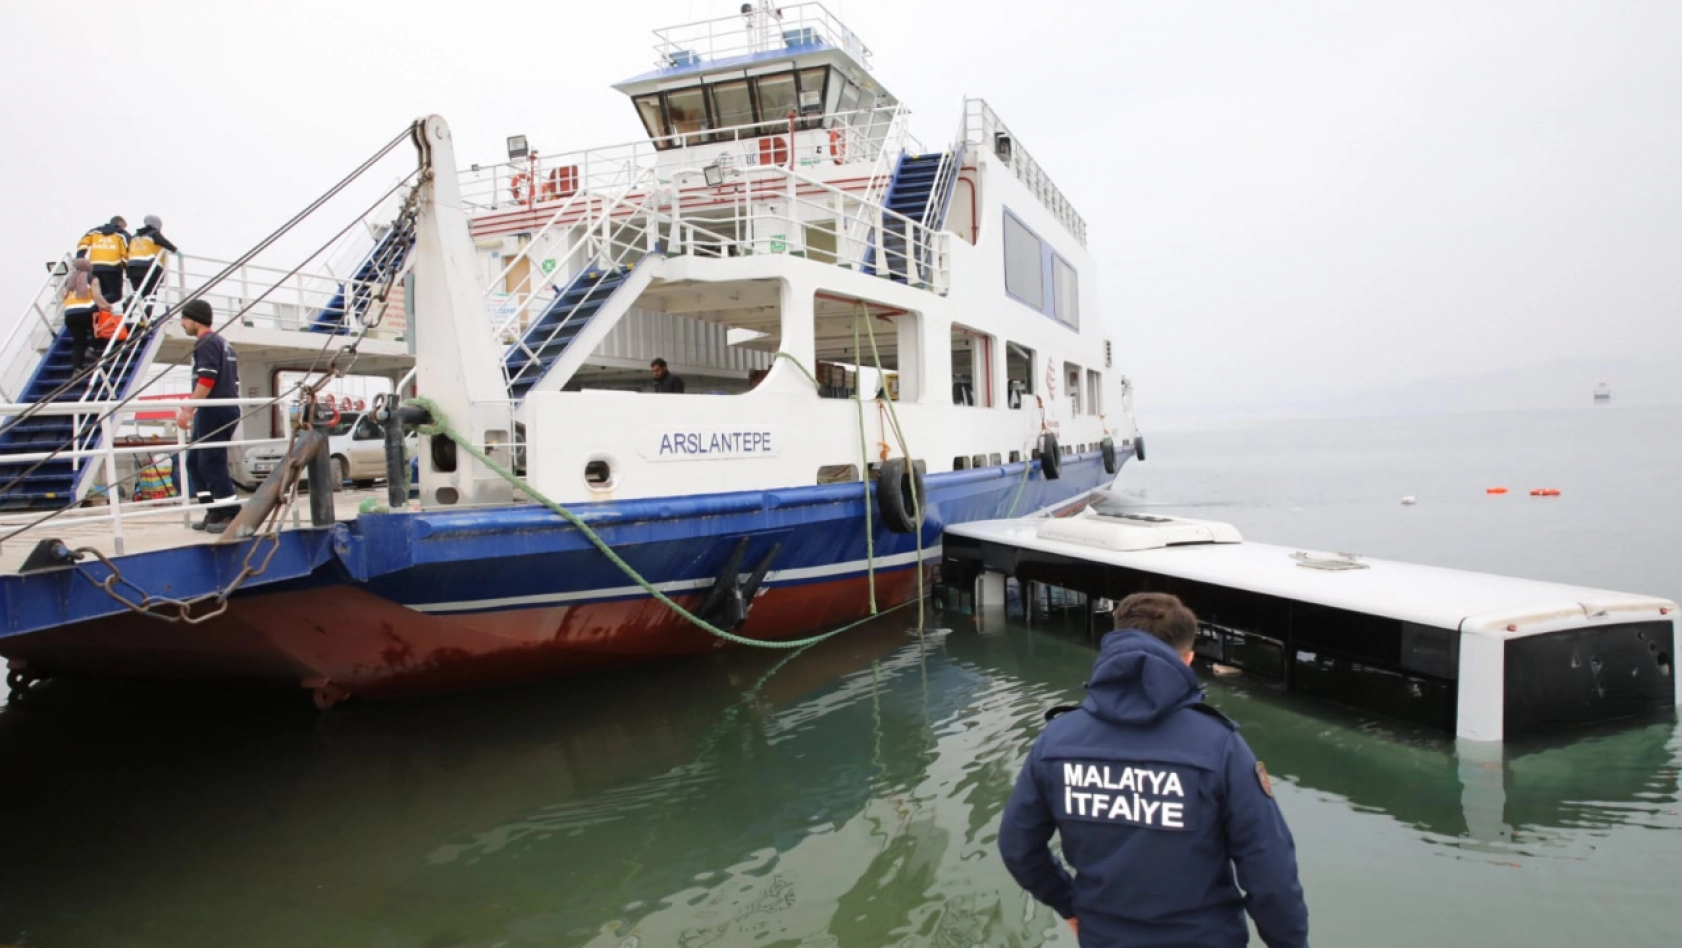 Malatya'da Özel Halk otobüsü baraj gölüne uçtu: 3 yaralı